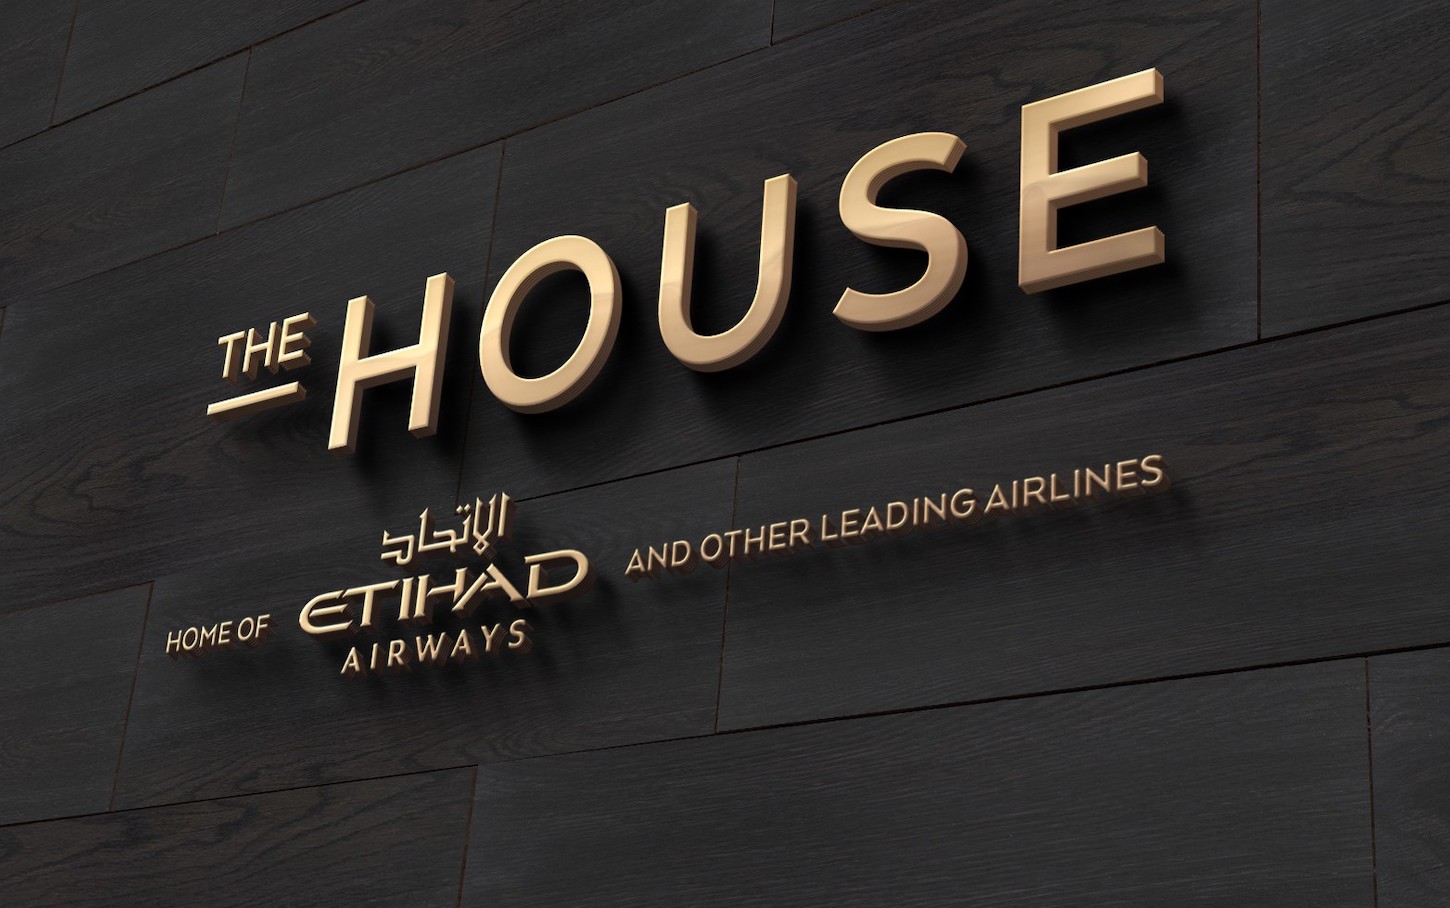 The House Etihad